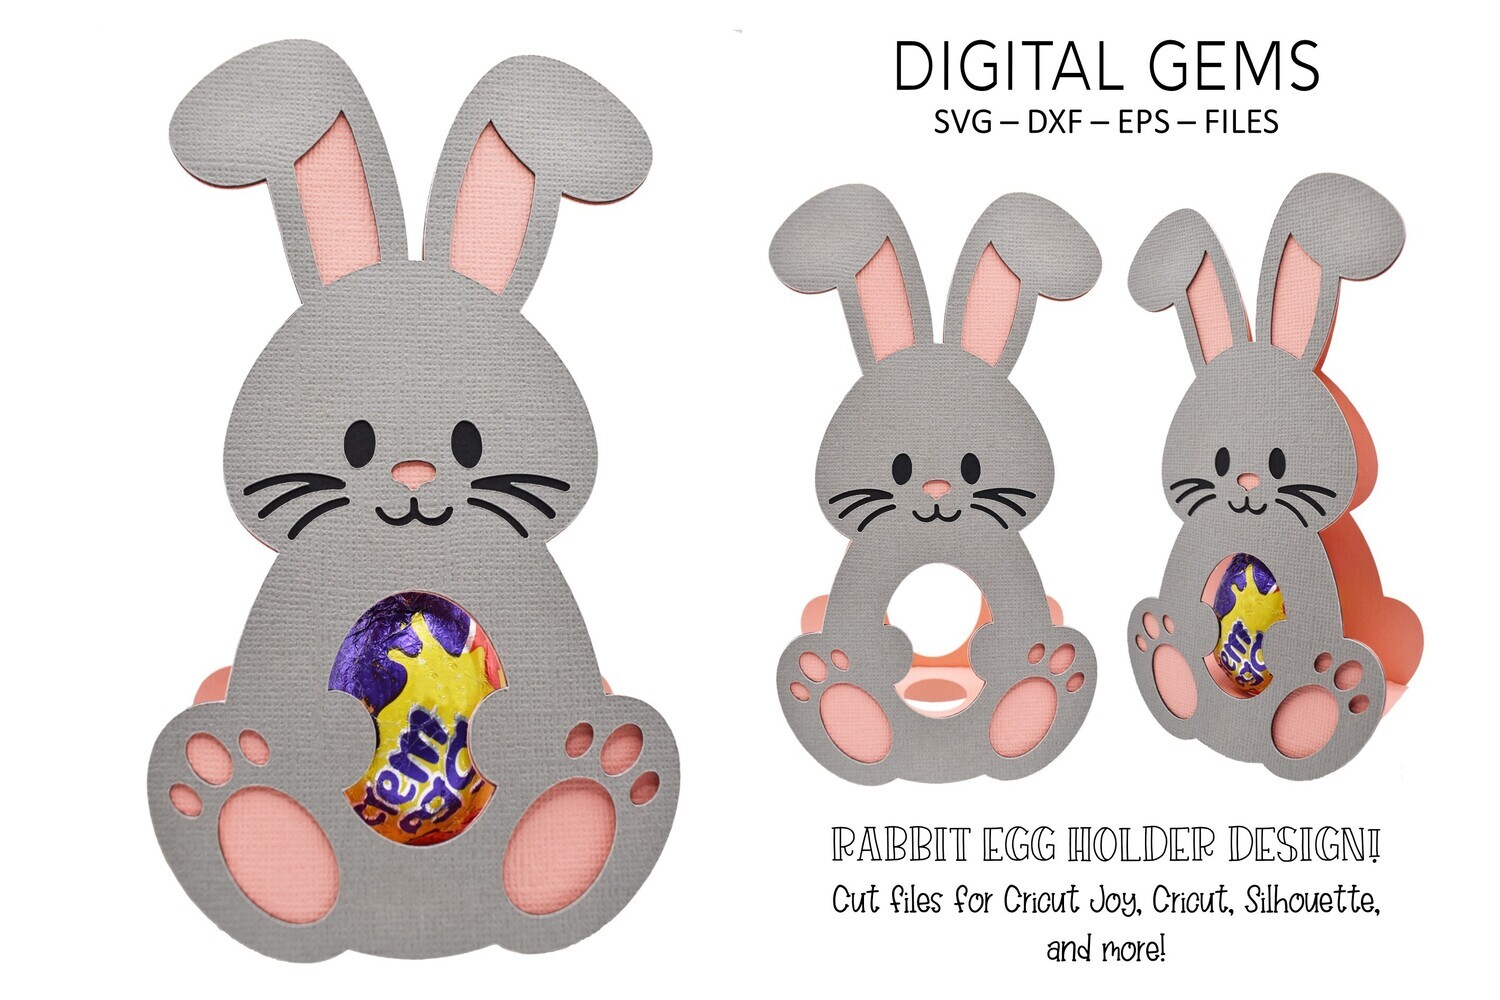 Animal egg holder designs Duck, Rabbit, Penguin and Lamb